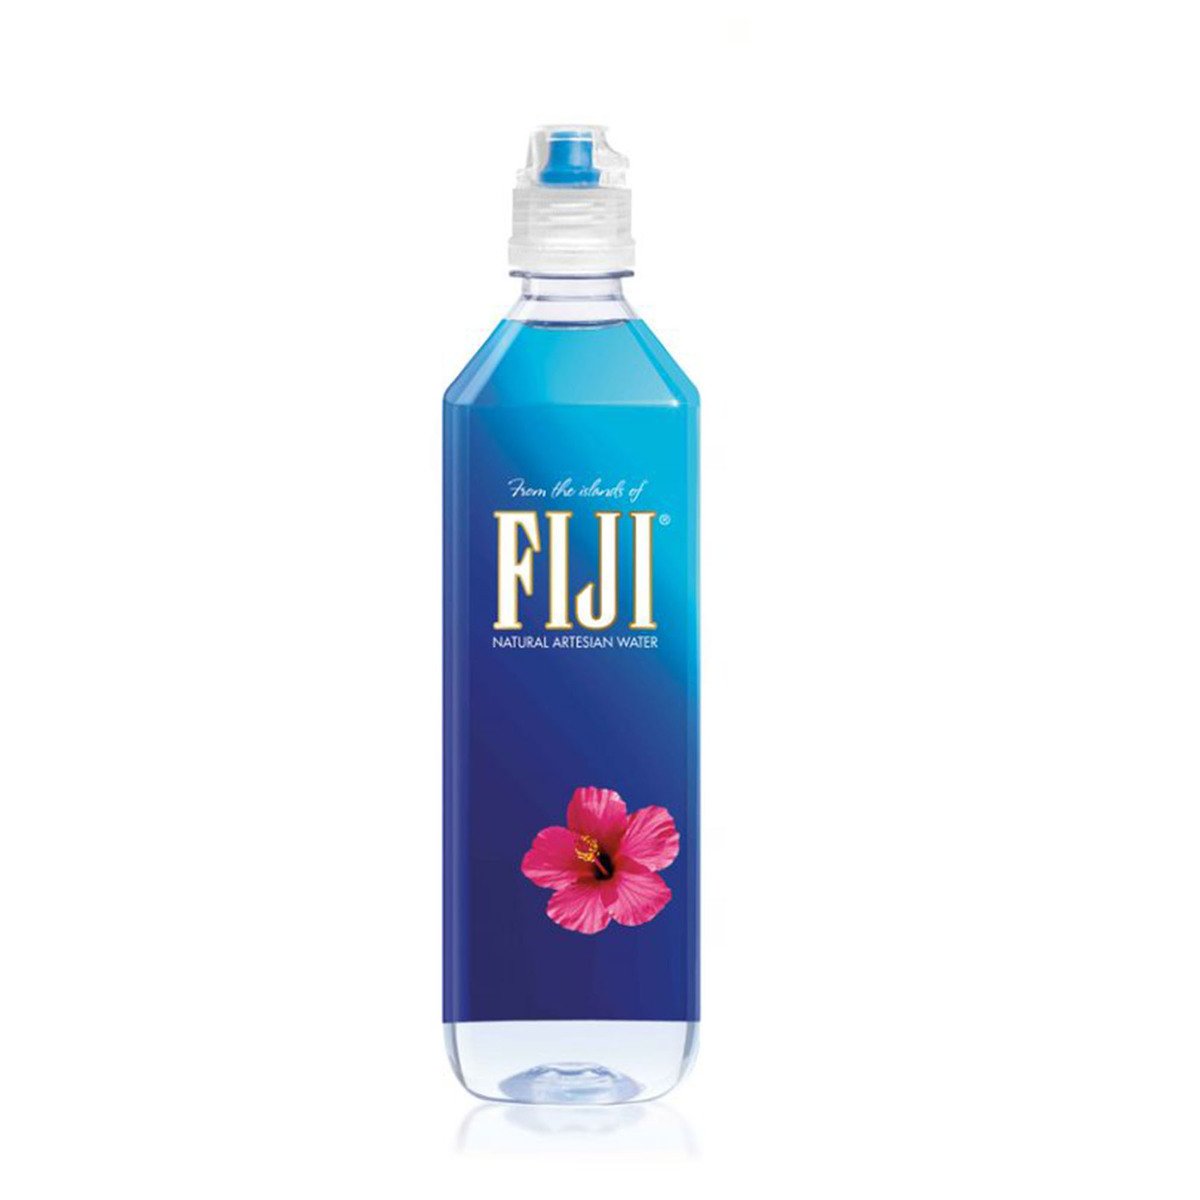 Buy Fiji Natural Artesian Water 700 ml Online at Best Price | Mineral/Spring water | Lulu UAE in UAE